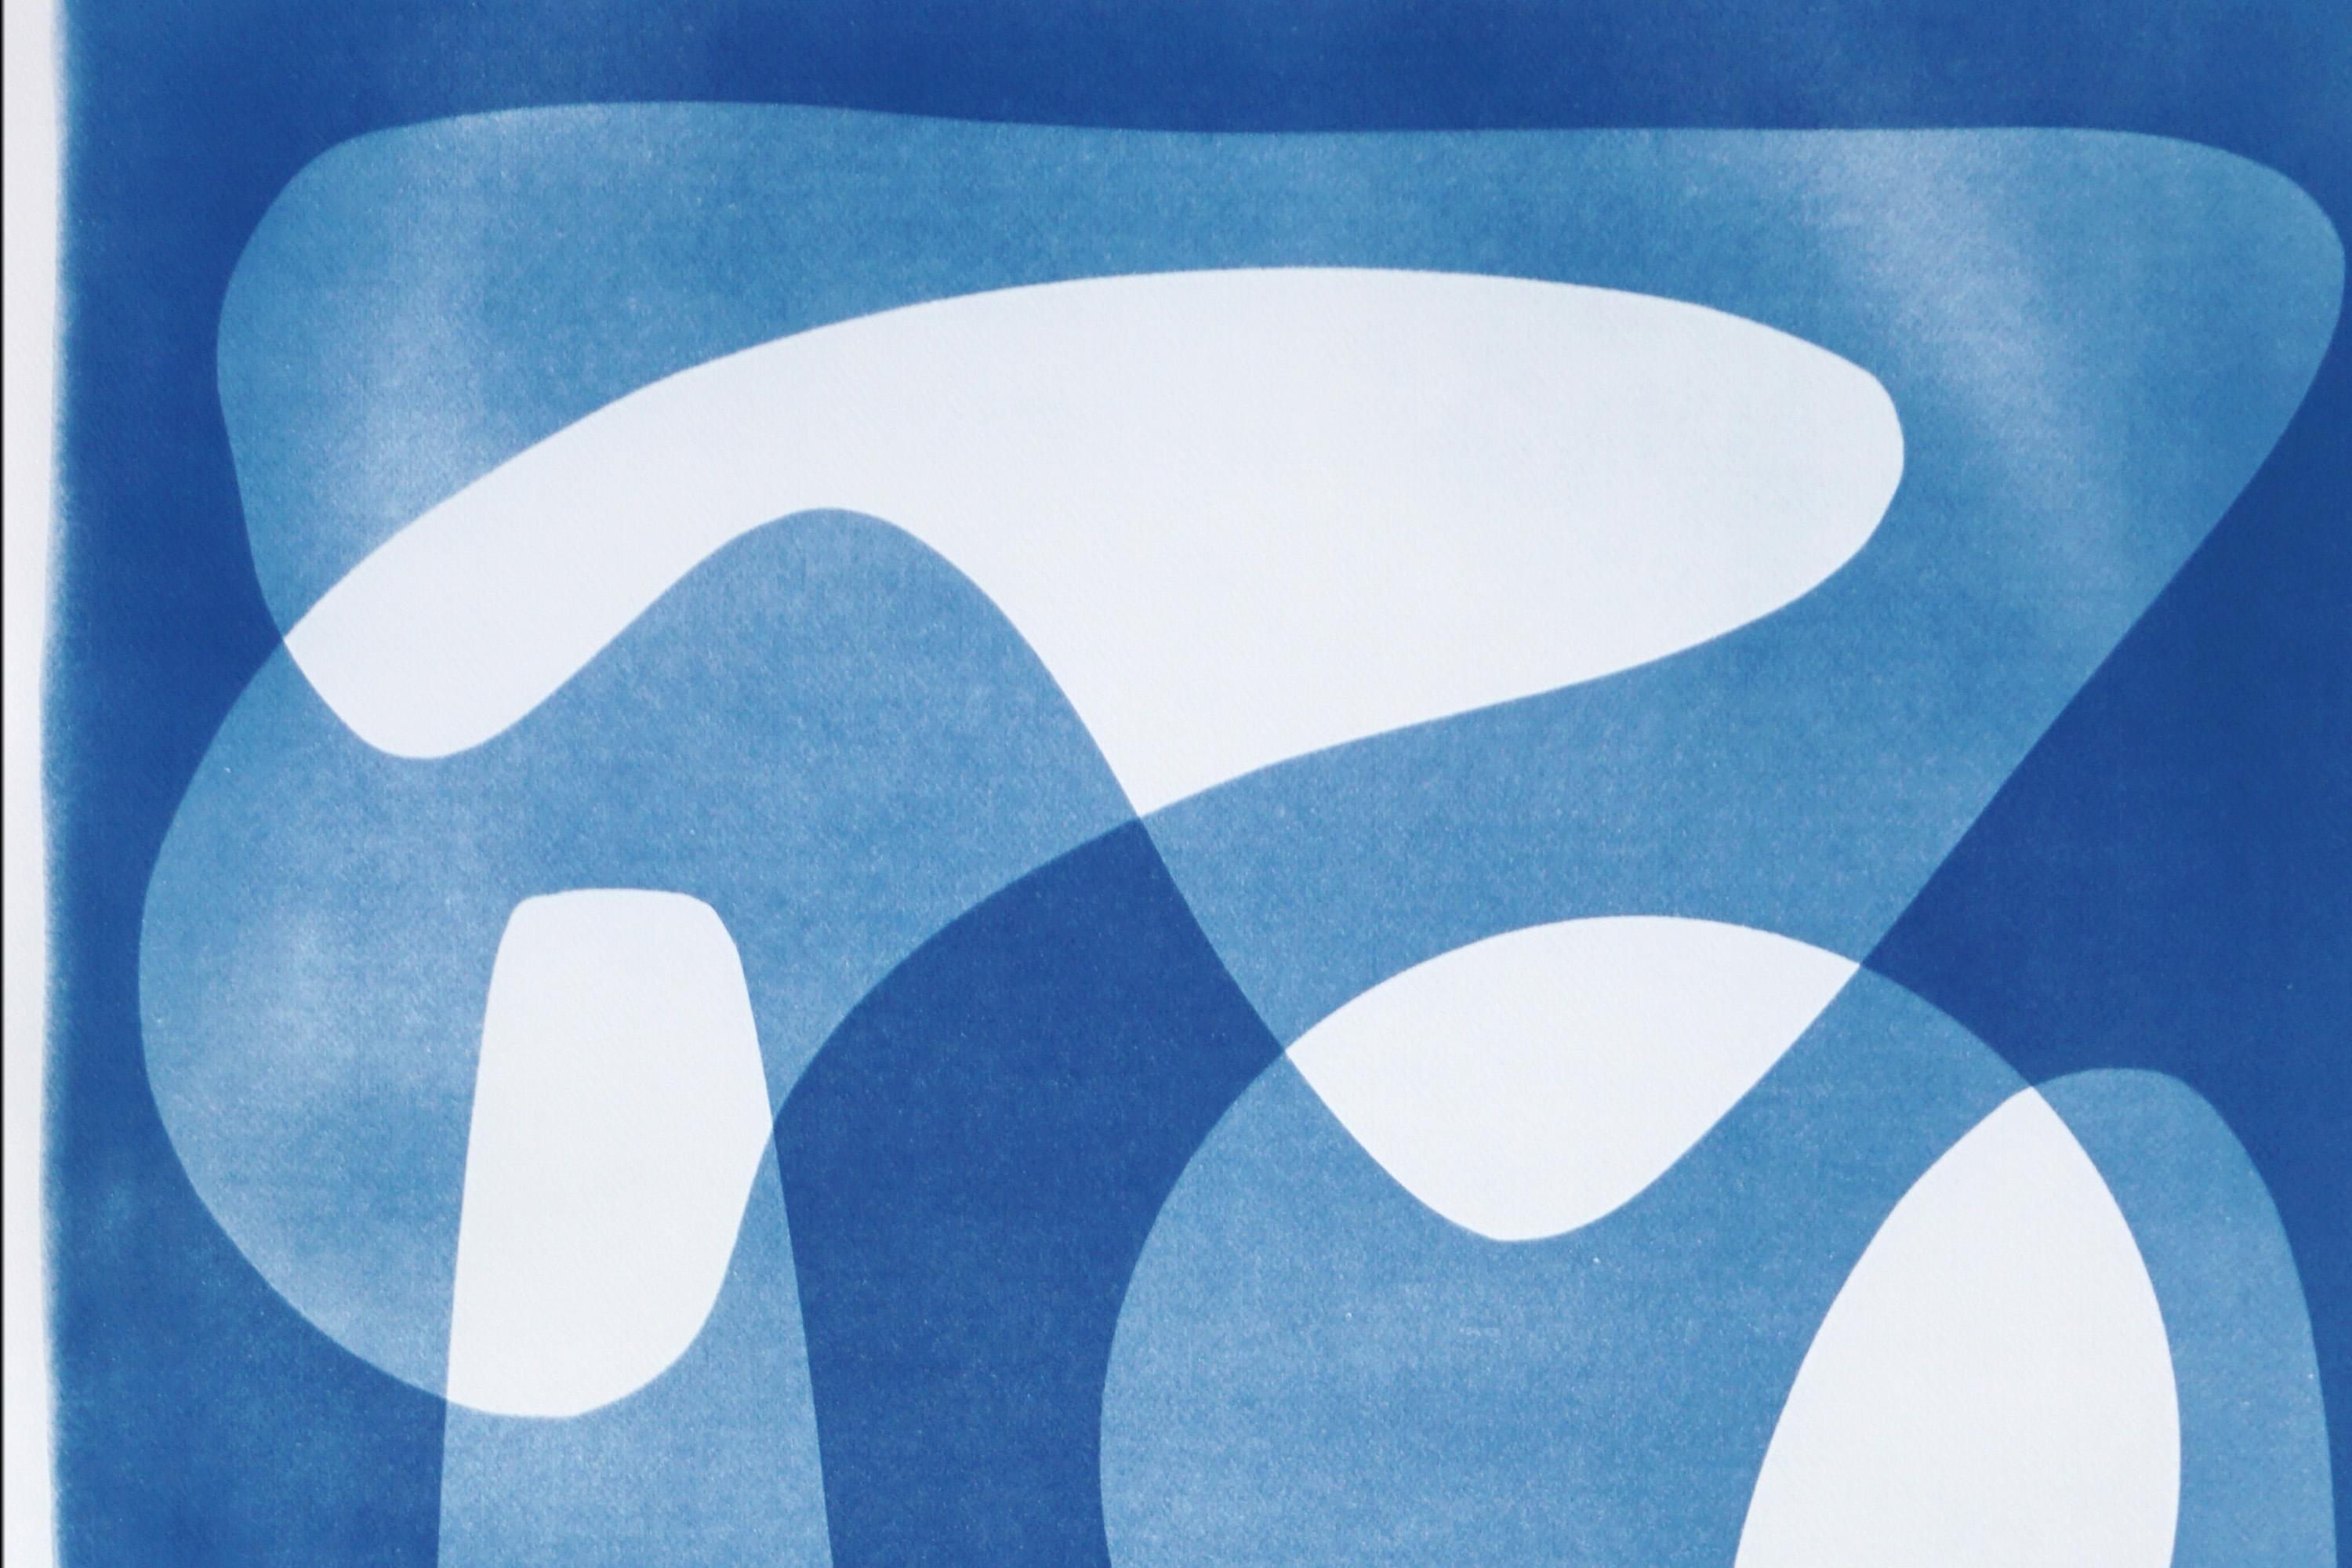 Handgefertigte Zyanotypie in Weiß und Blau, Mid-Century Modern Abstrakte Formen, Papier (Bauhaus), Photograph, von Kind of Cyan